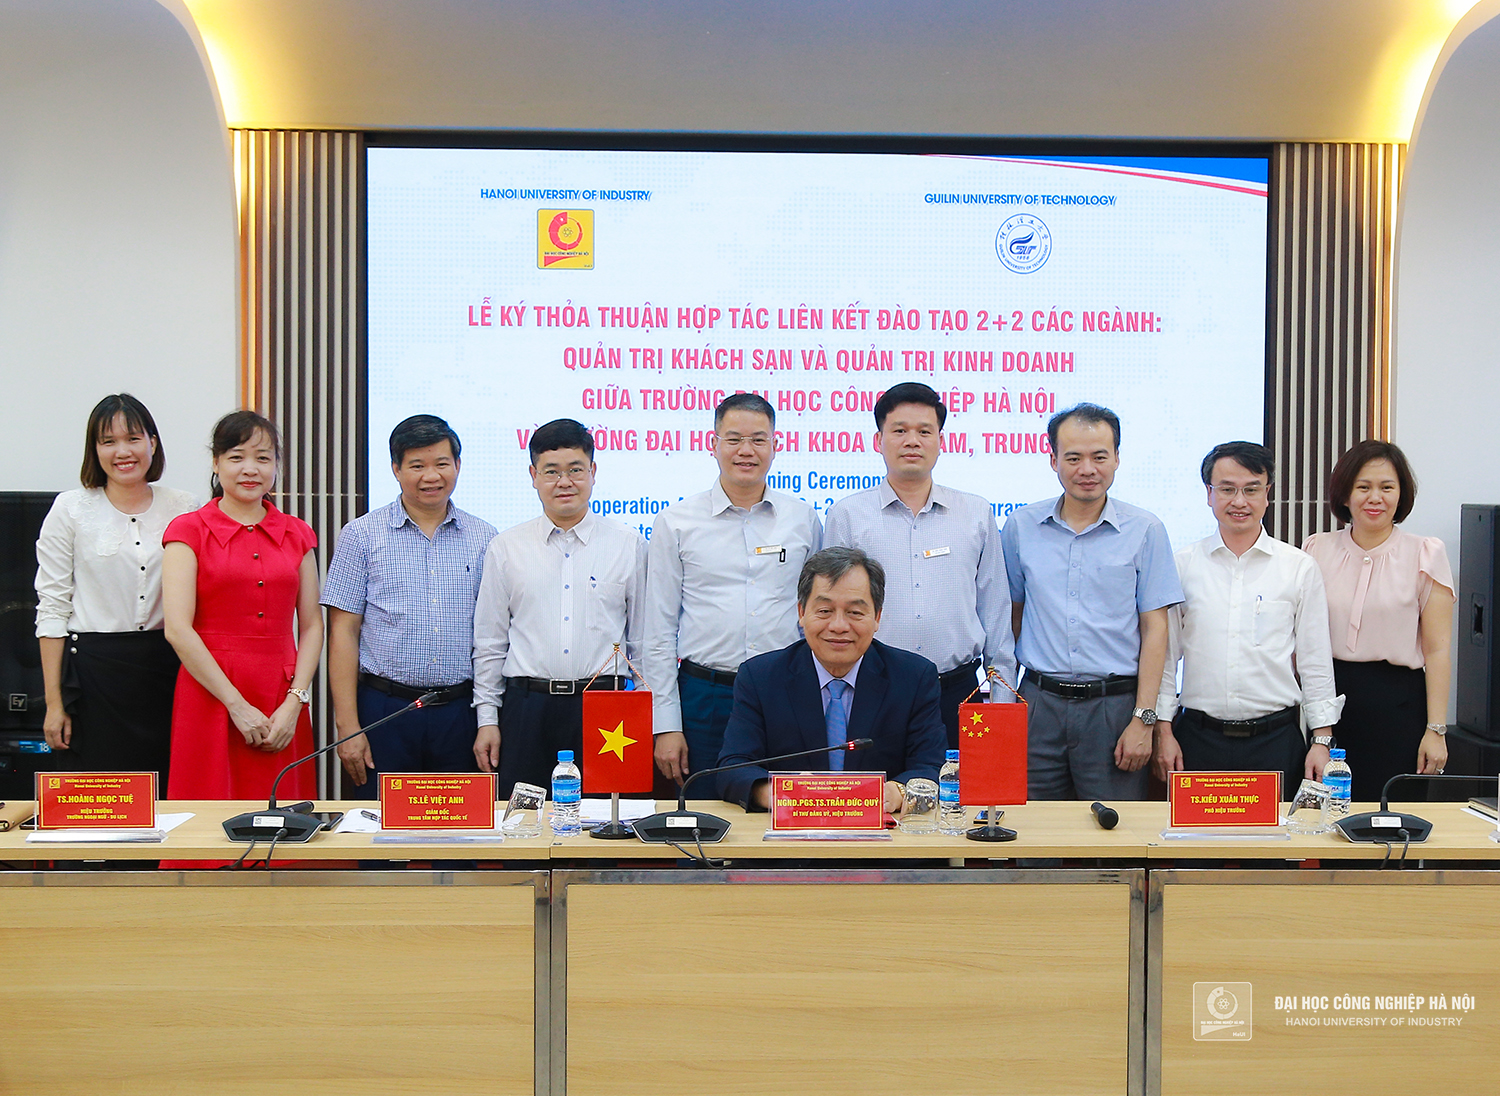 Trường Đại học Công nghiệp Hà Nội ký hợp tác đào tạo với Trường Đại học Bách khoa Quế Lâm, Trung Quốc